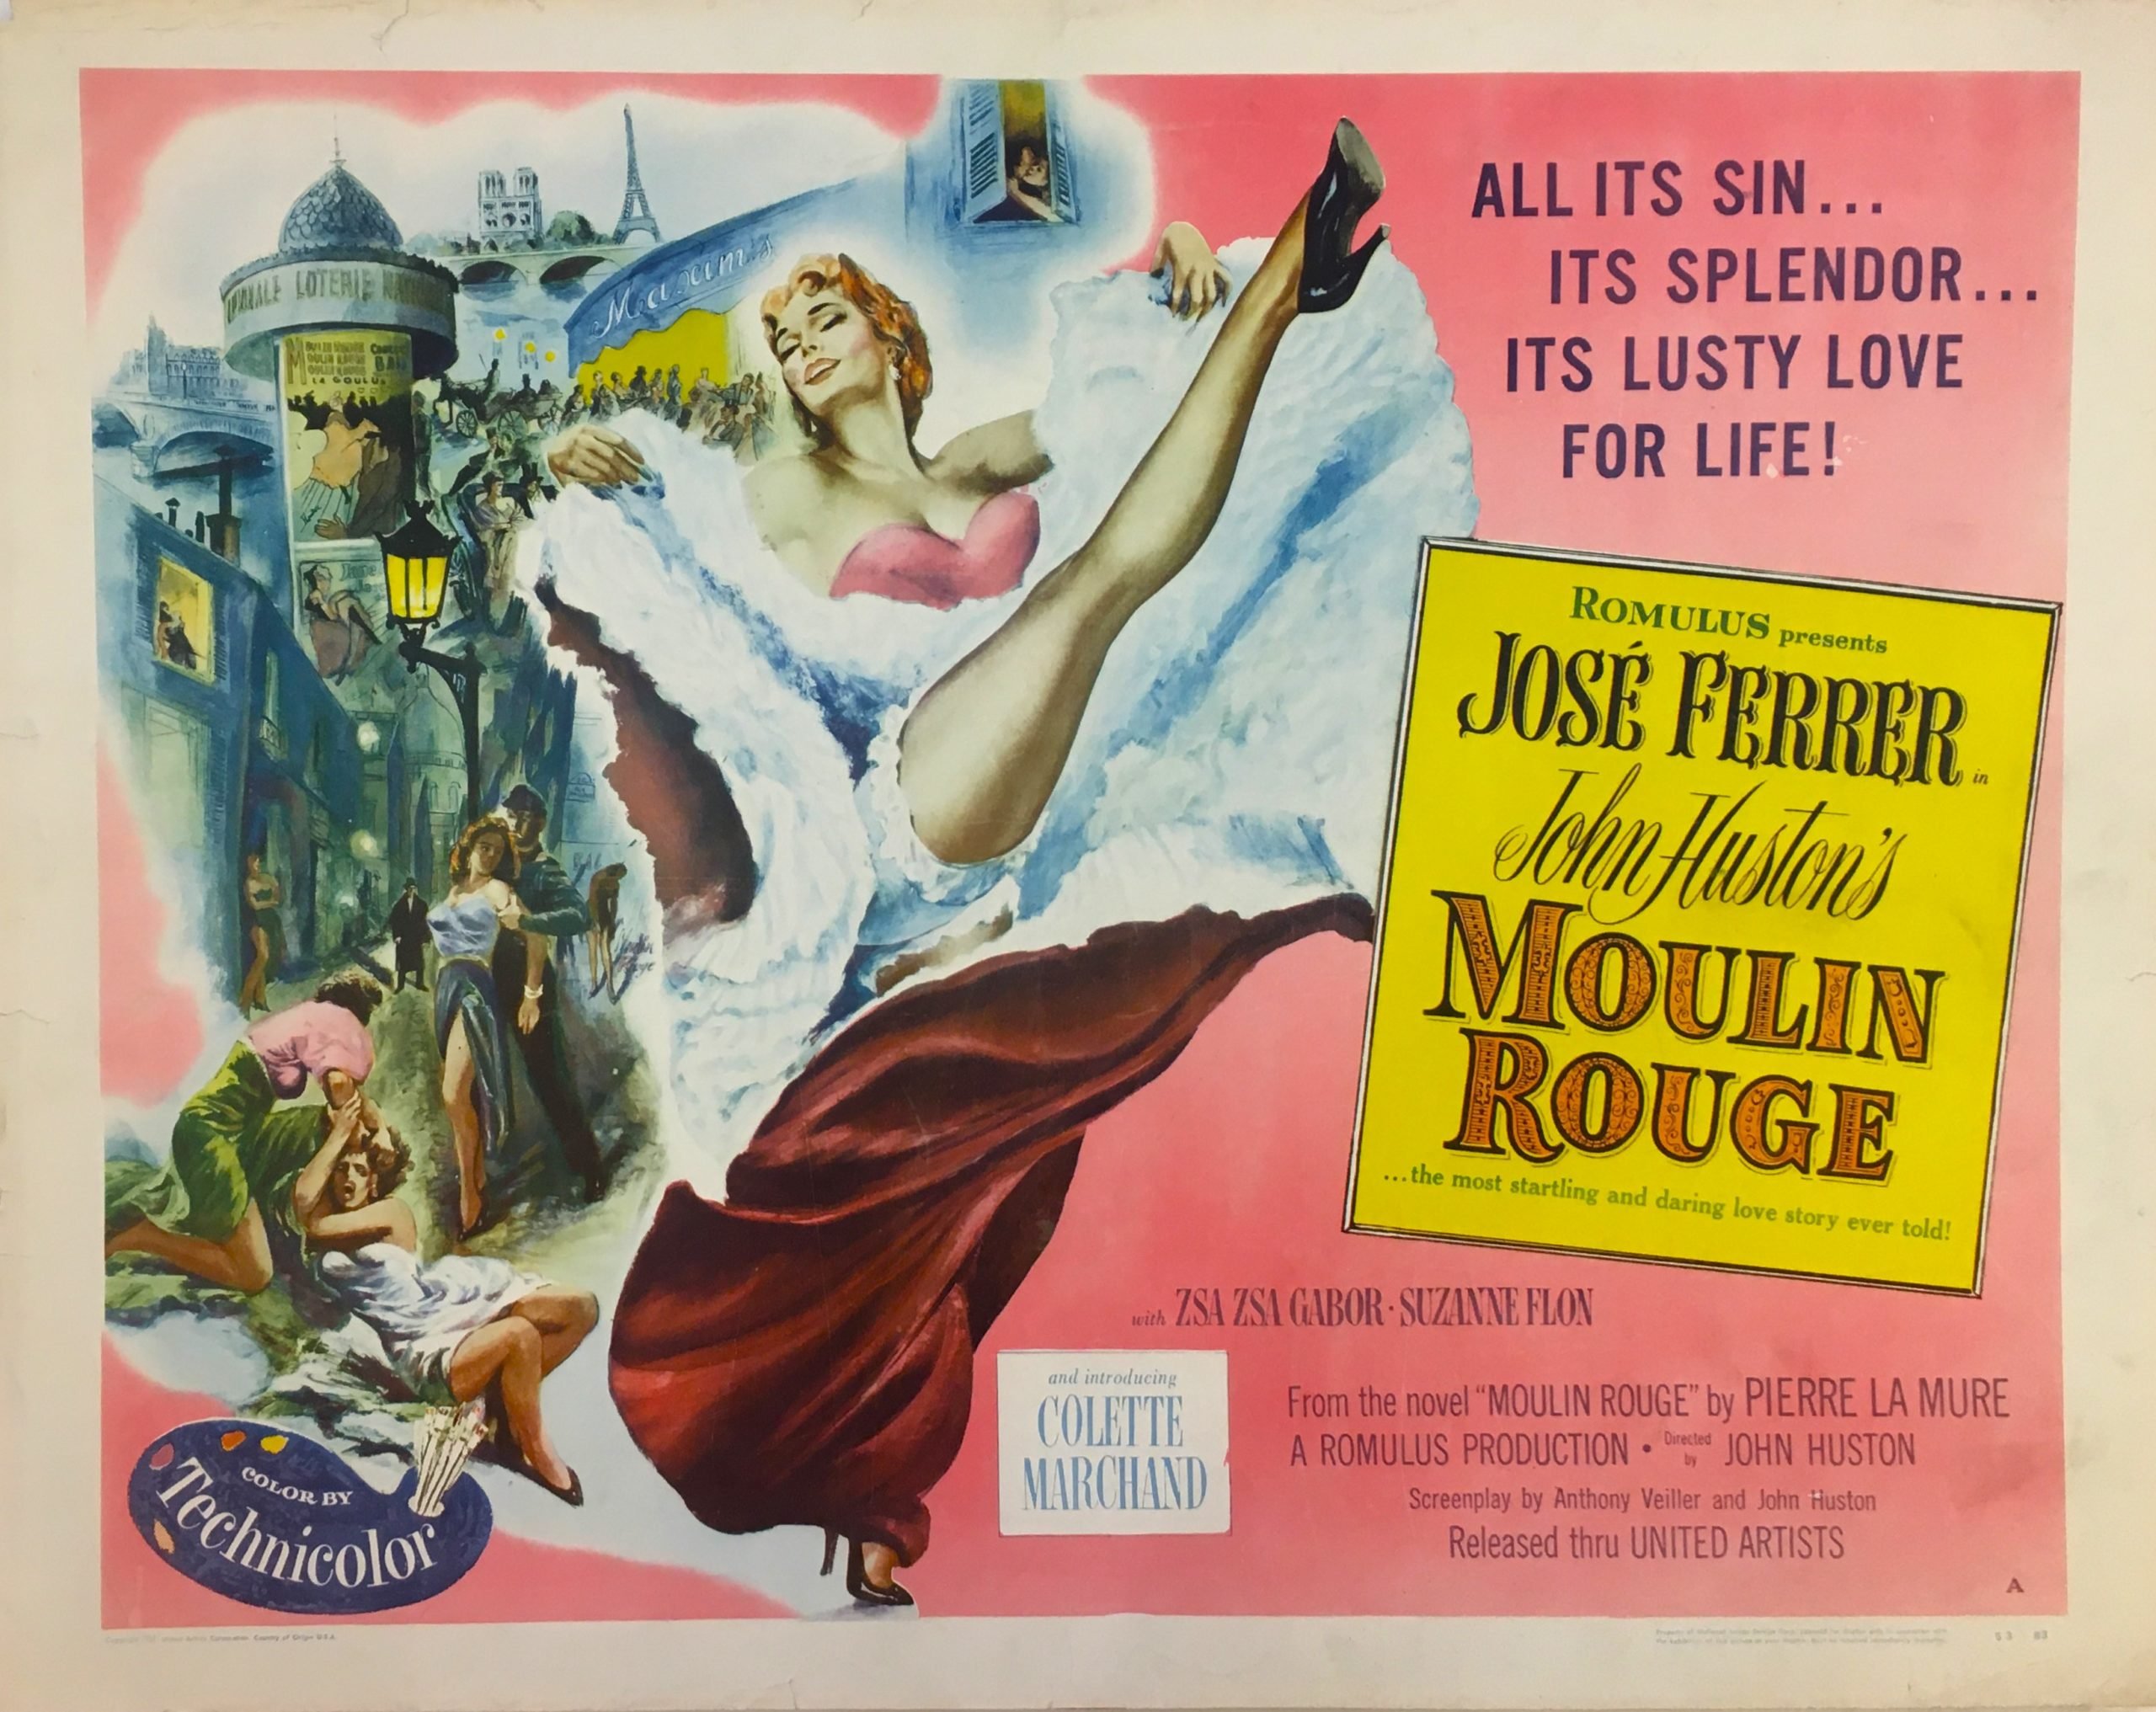 Original vintage US cinema movie poster for Moulin Rouge